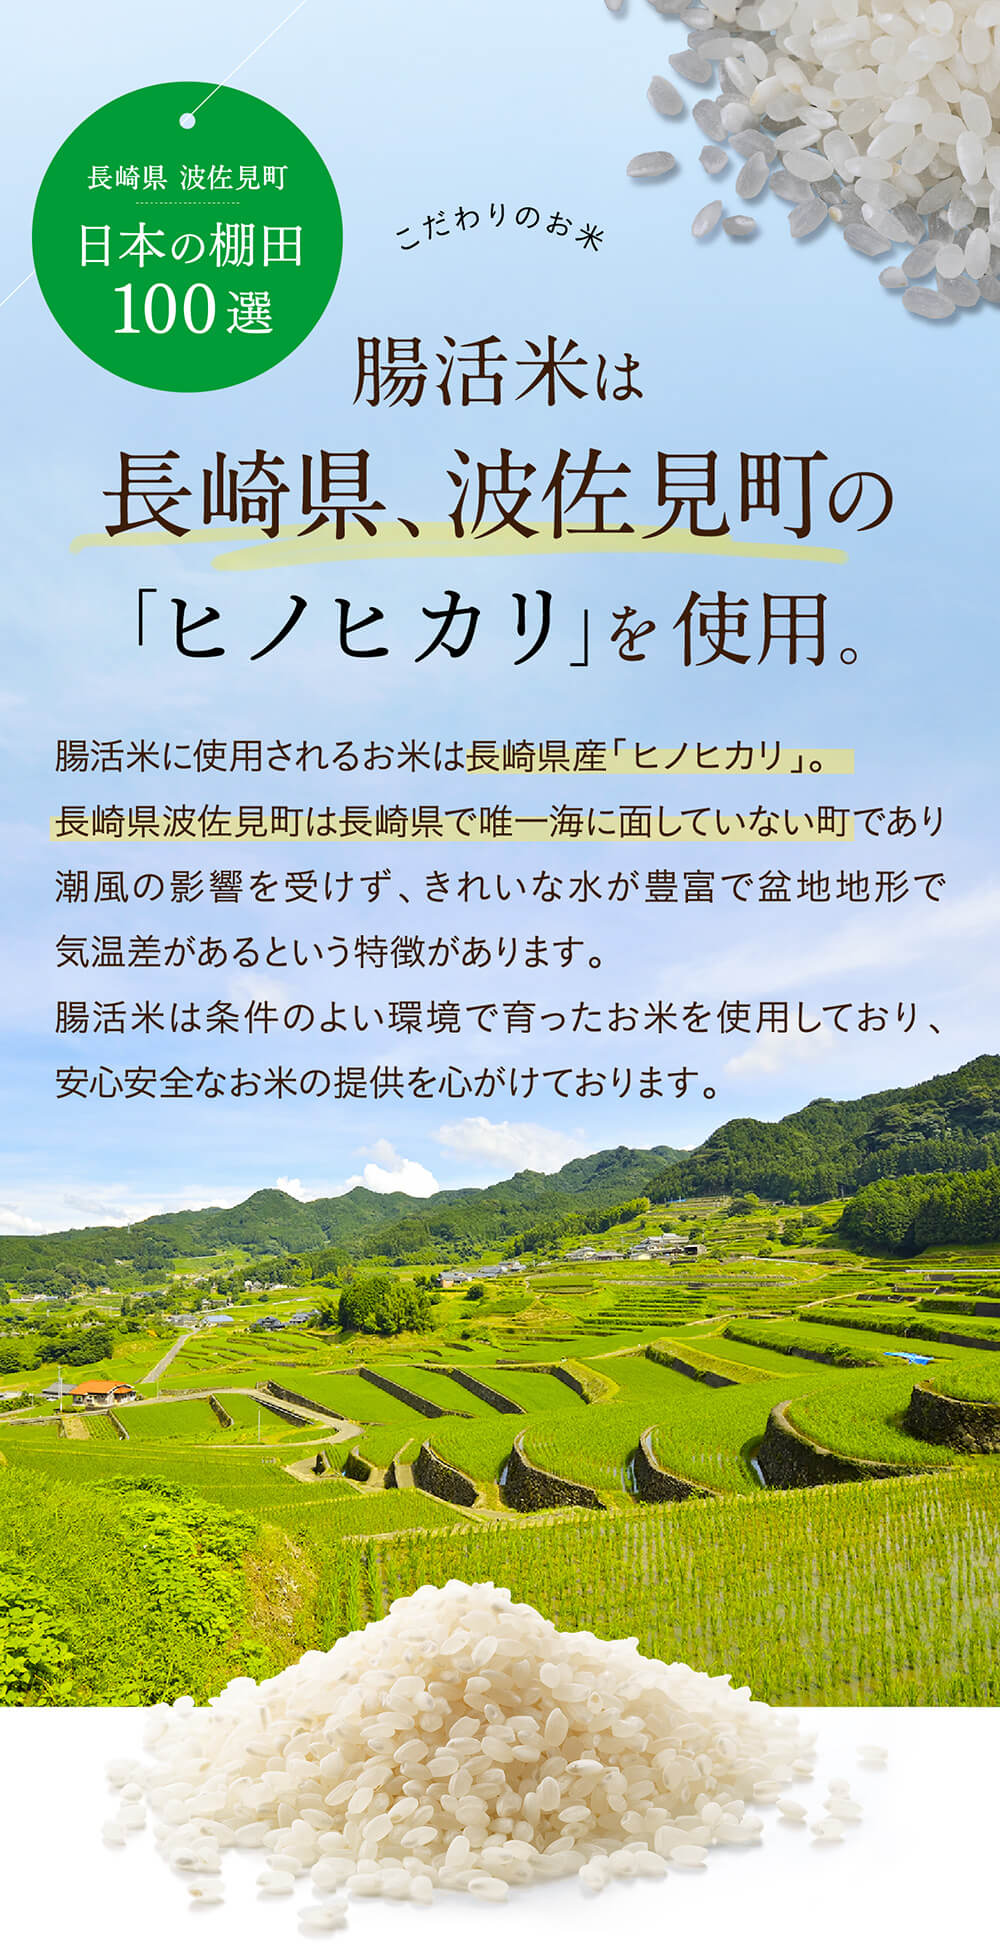 腸活米は長崎県、波佐見町の「ヒノヒカリ」を使用。